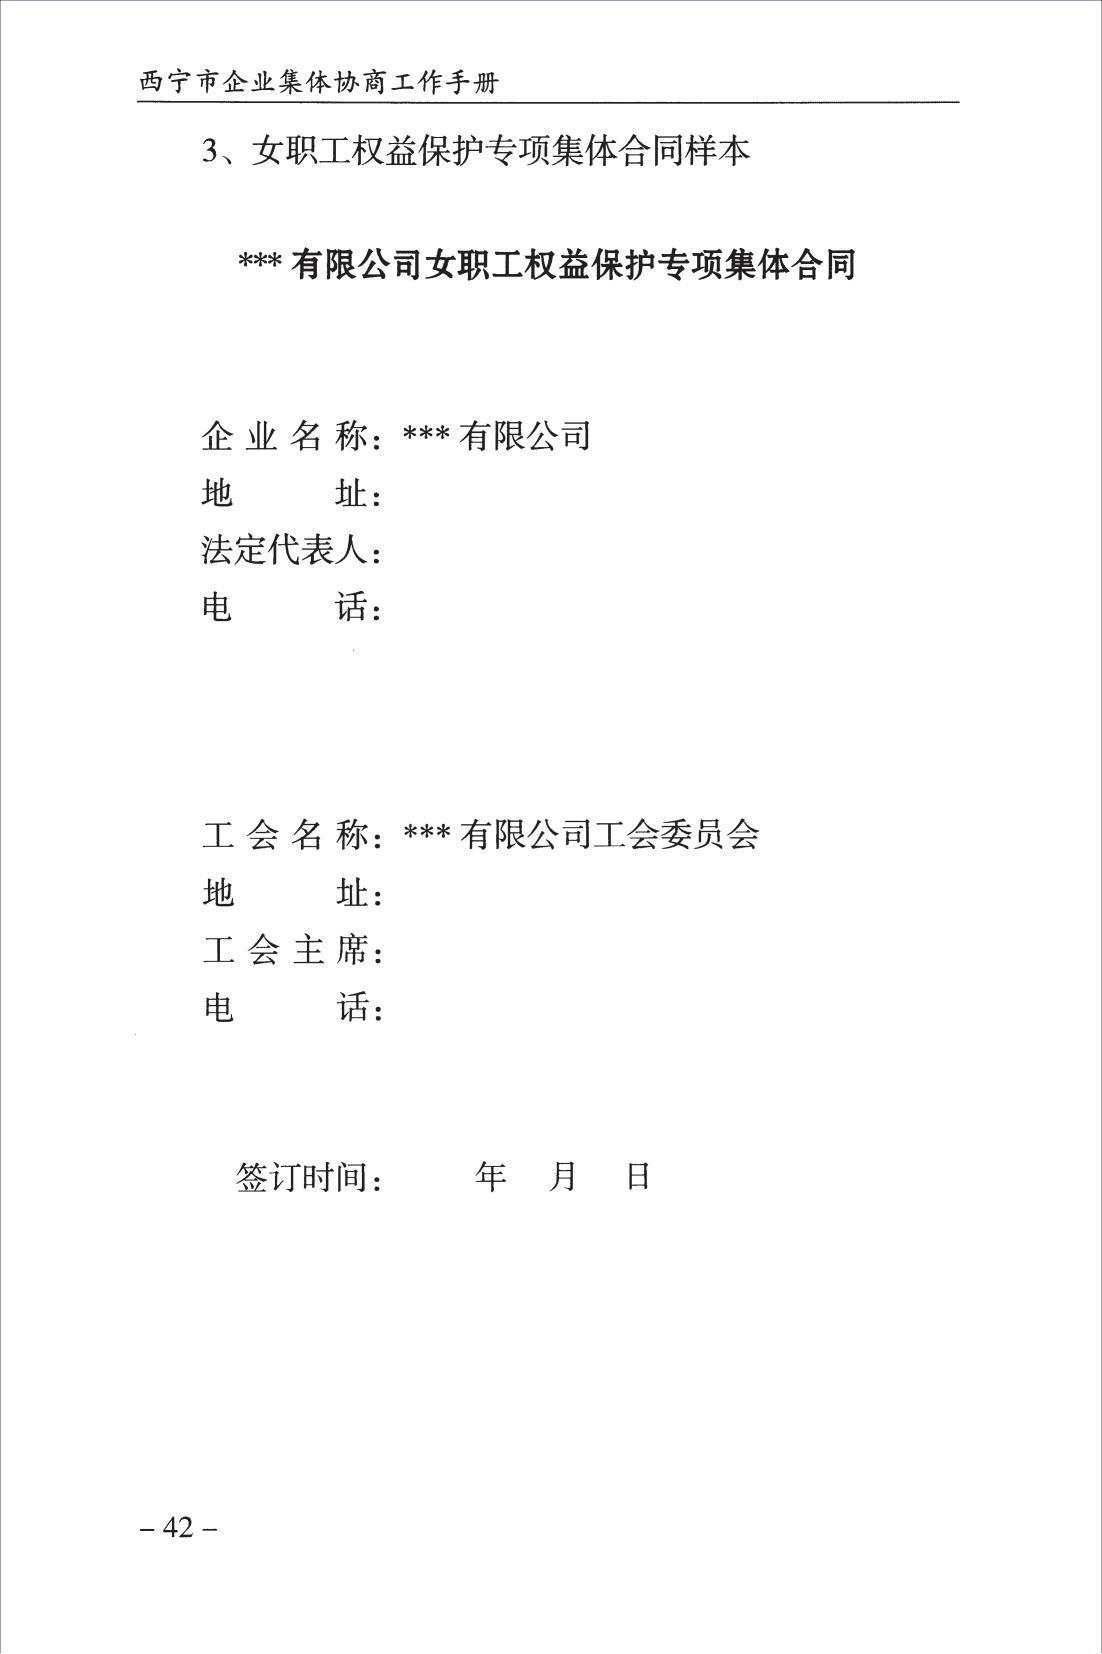 西宁市企业集体协商工作手册_44.jpg